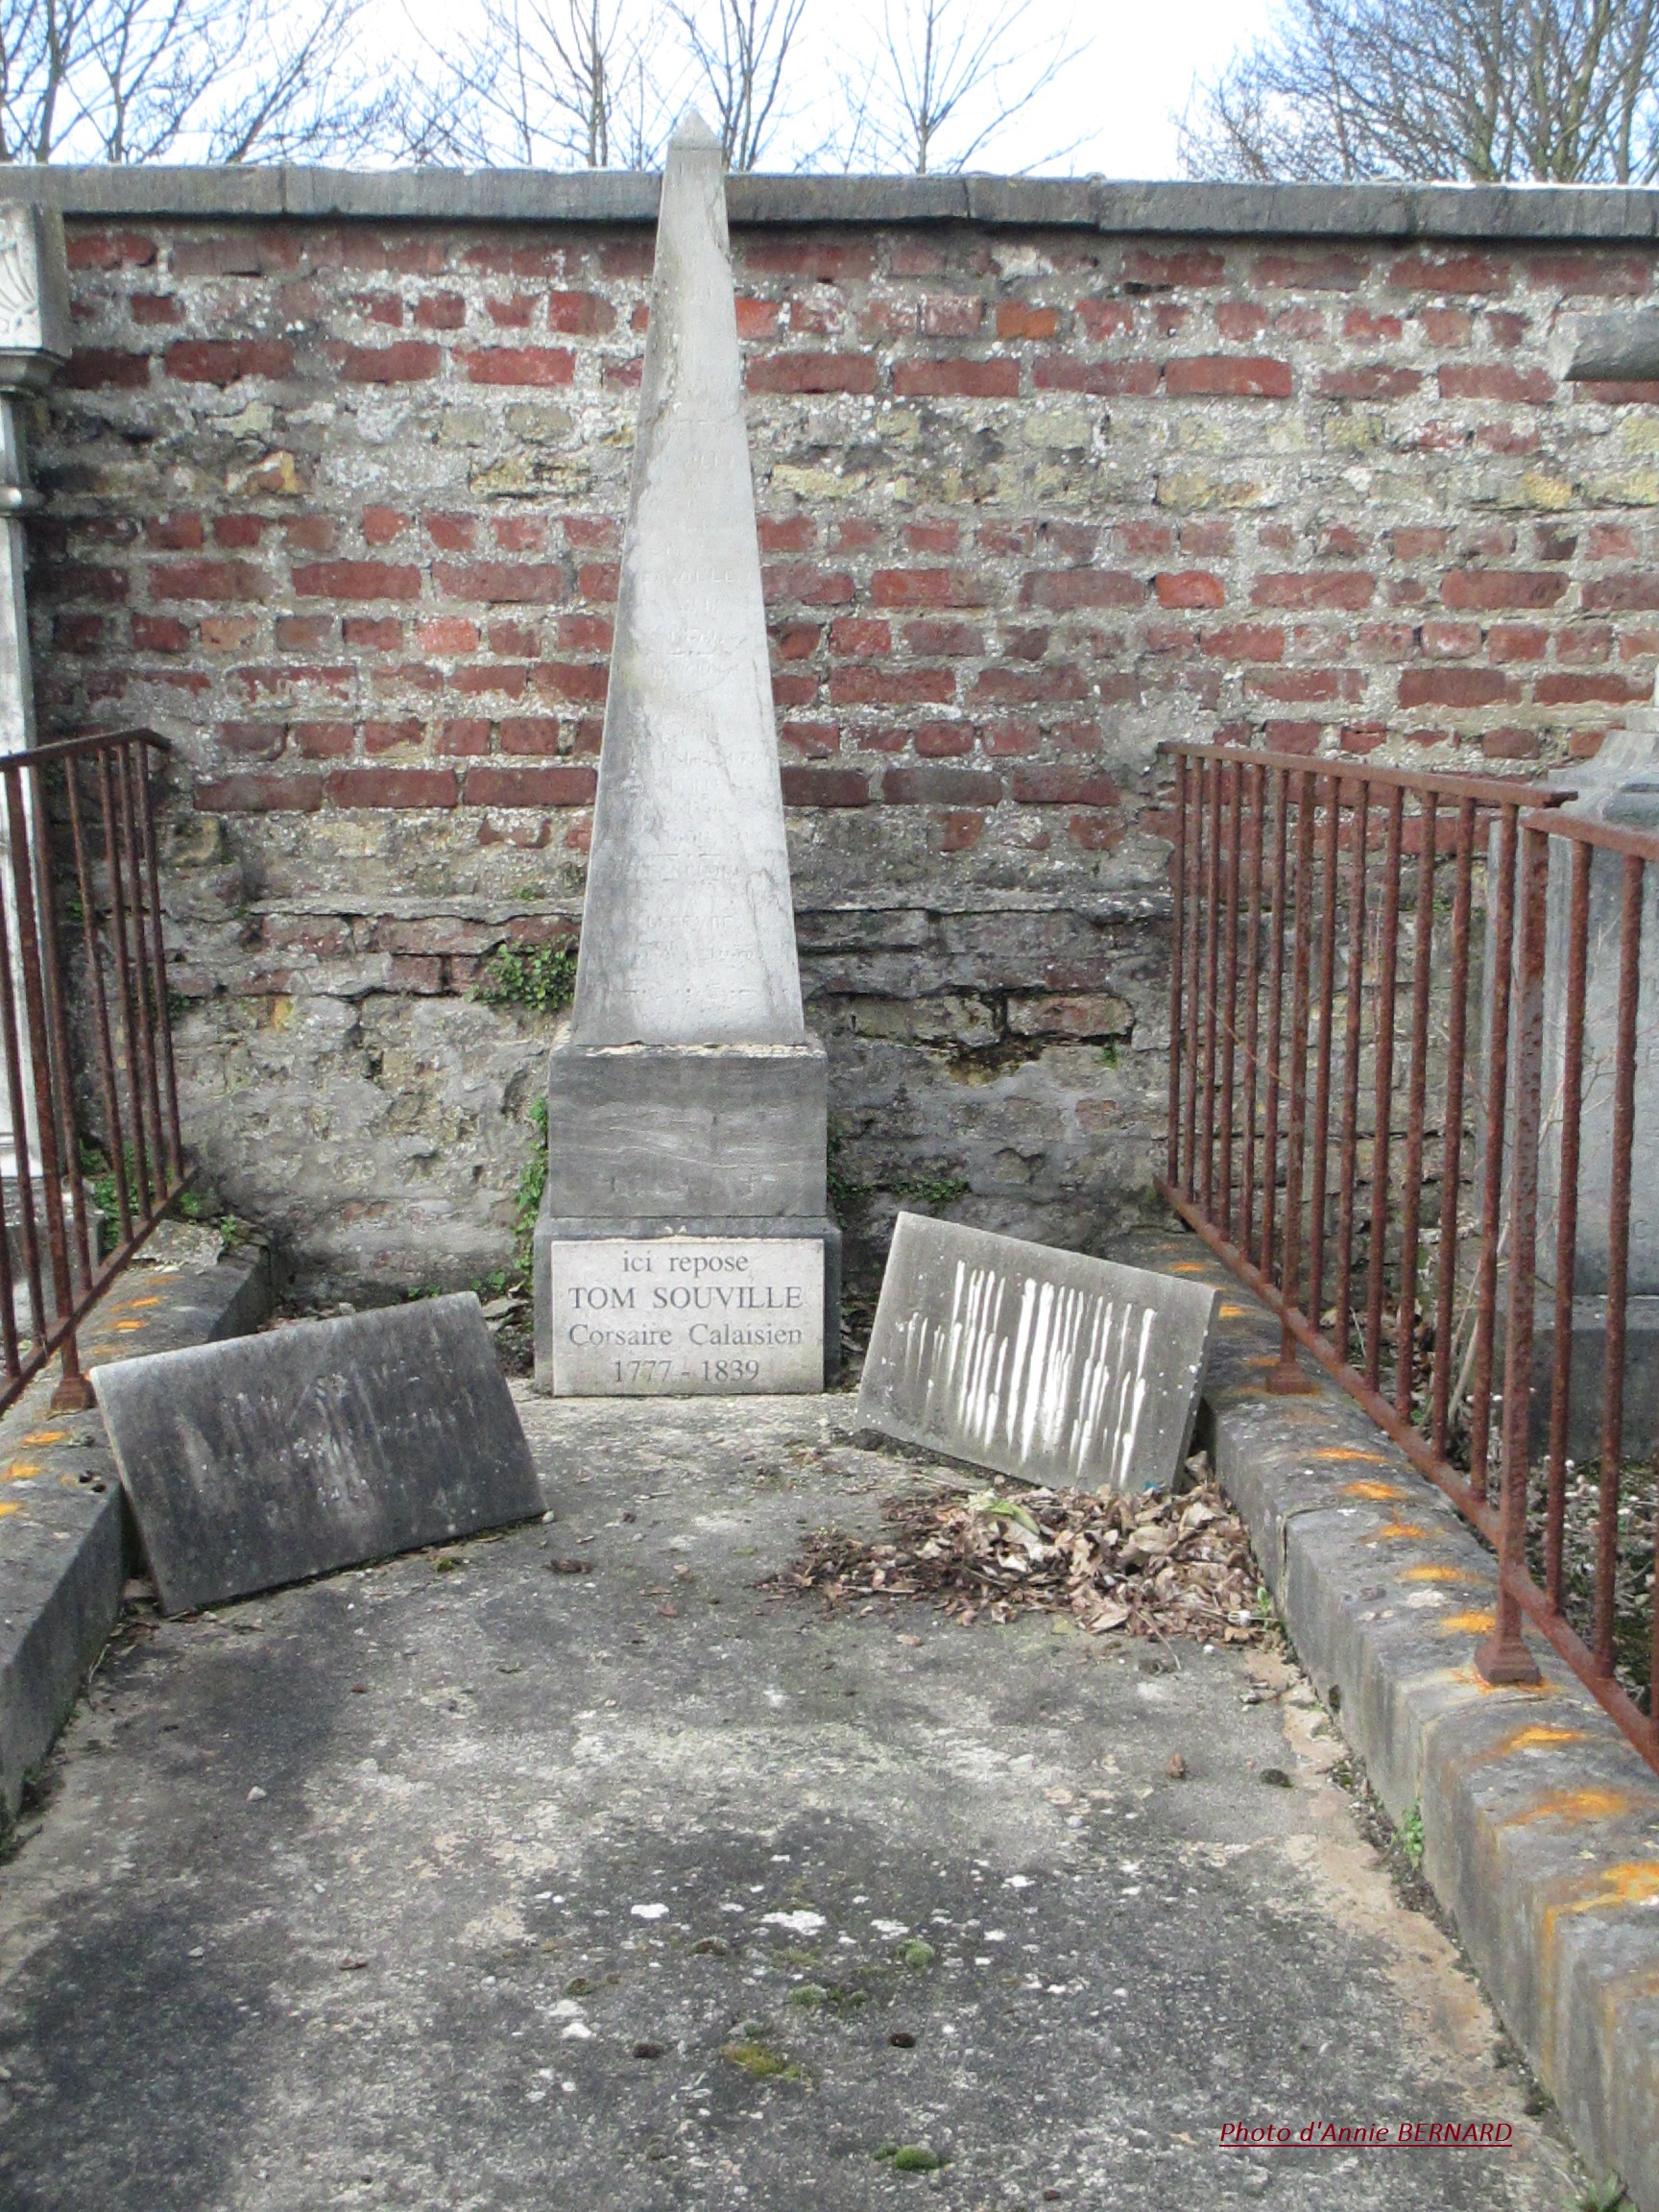  Tombe du corsaire Tom SOUVILLE ( 1777-1839)